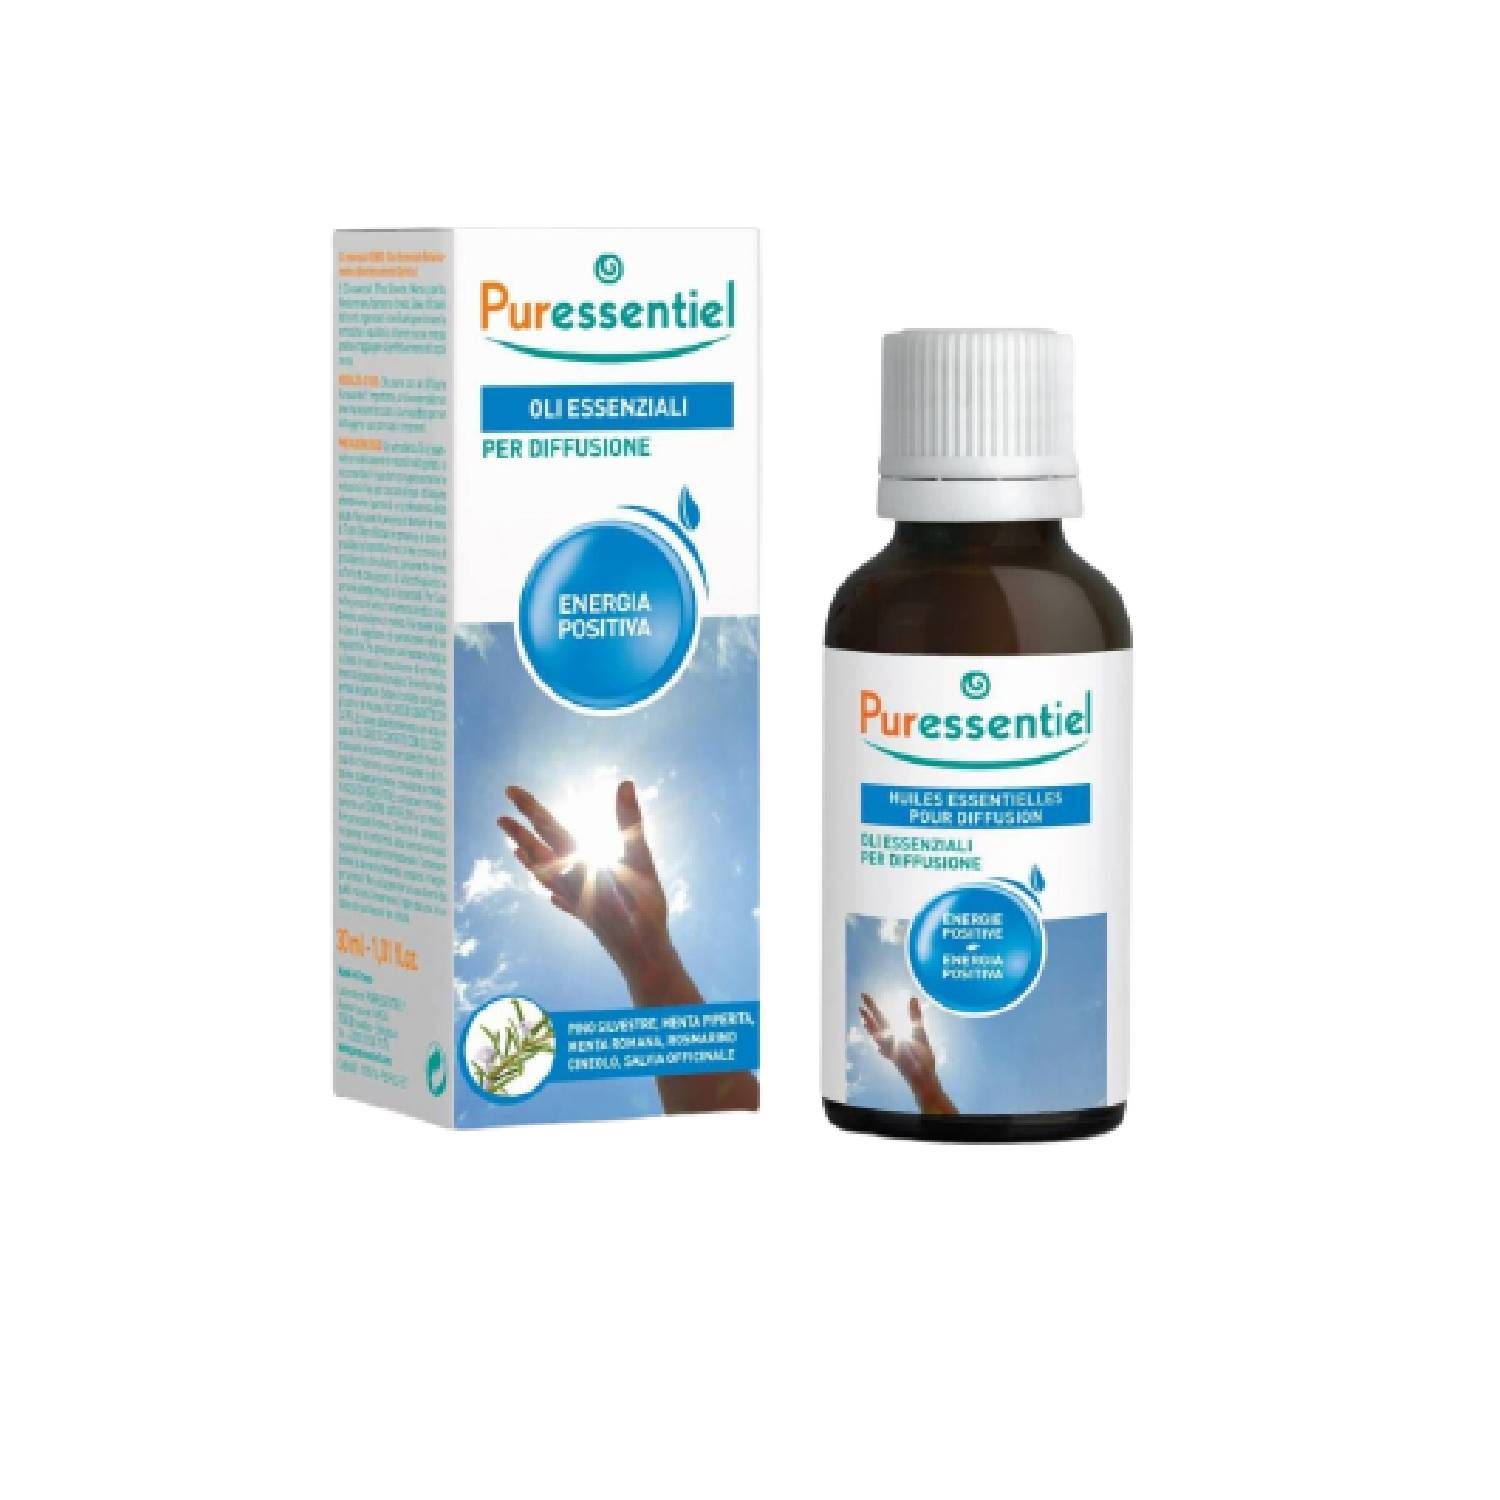 Puressentiel Oli Essenziali Per Diffusione Energia Positiva 30ml - Top  Farmacia